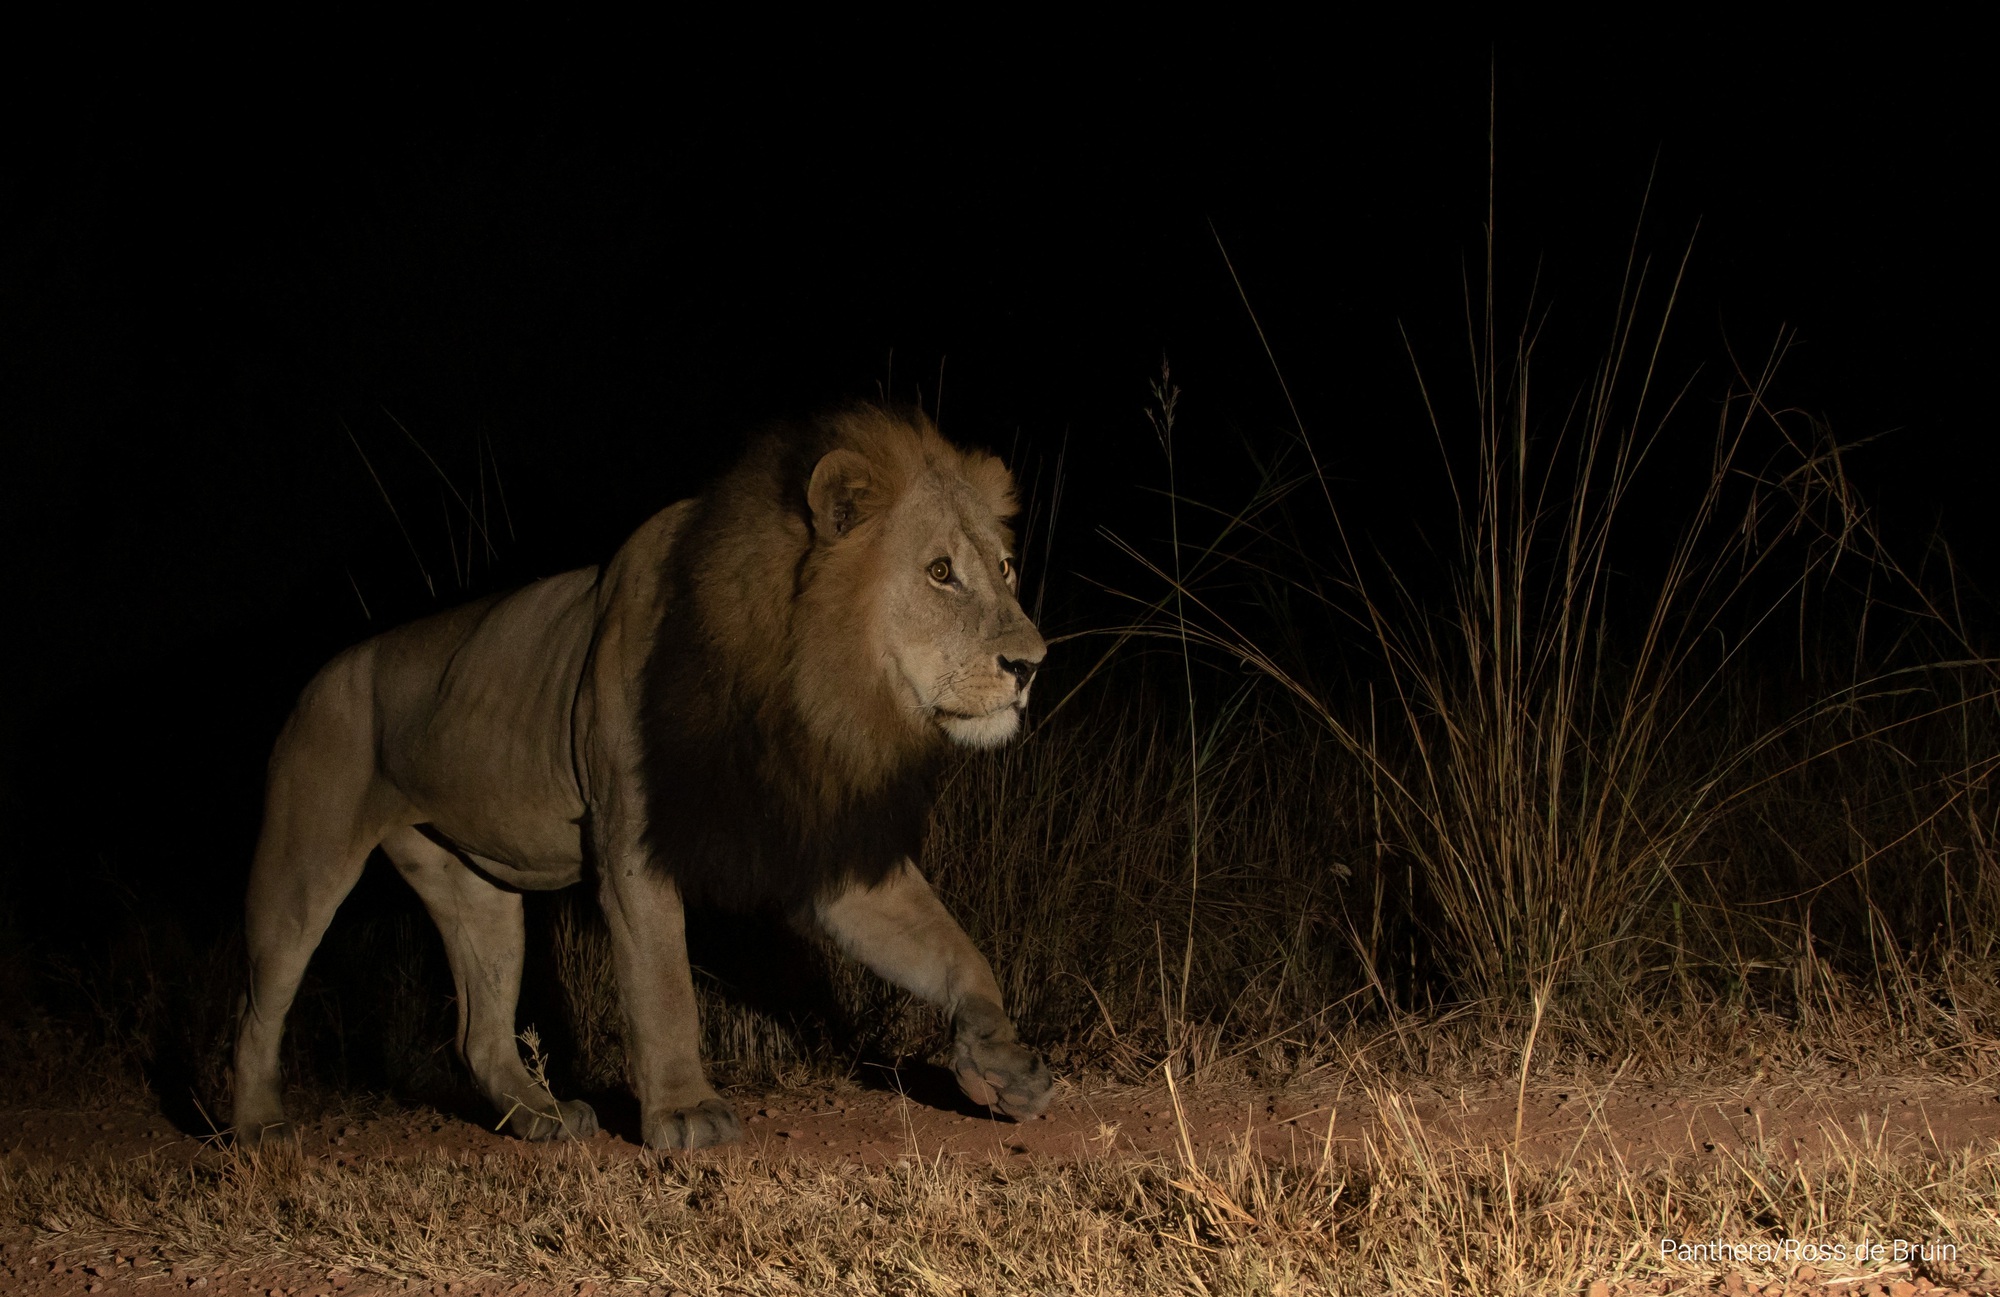 Kền kền giúp theo dõi săn trộm tại công viên ở Zambia - Ảnh 1.